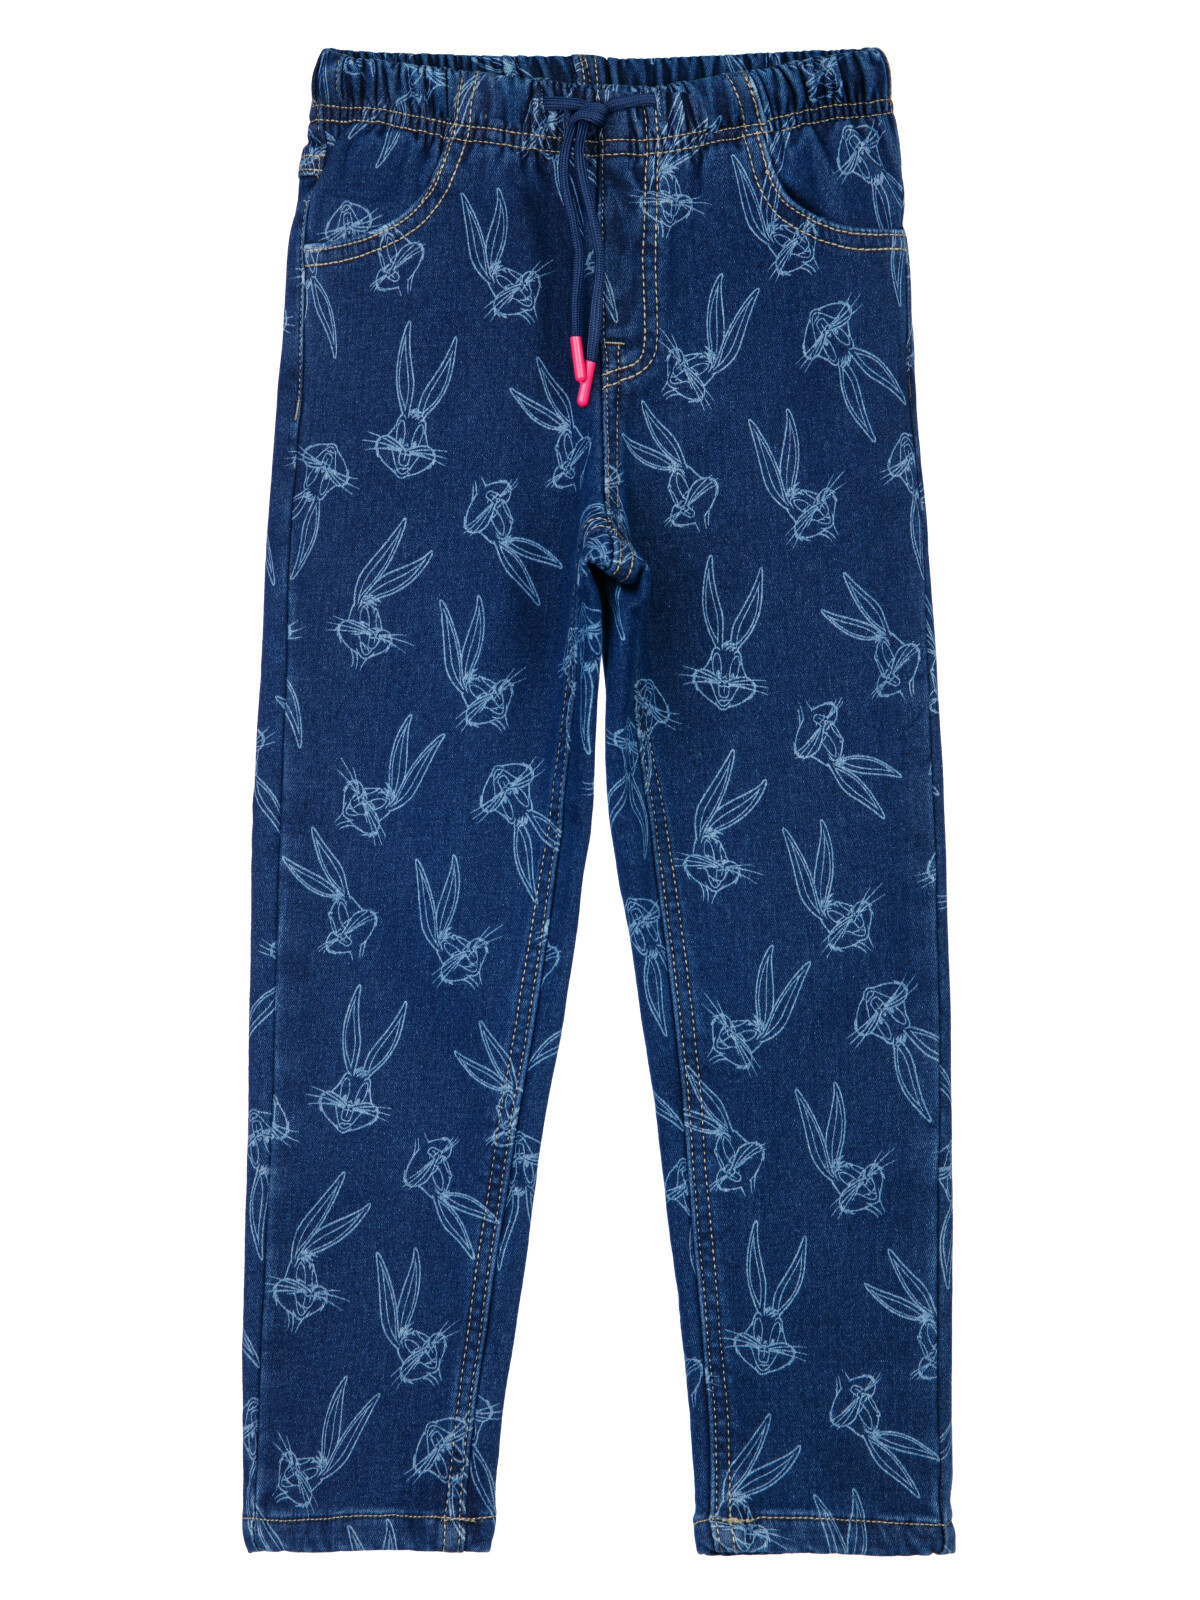 Брюки текстильные джинсовые утепленные флисом для девочек PlayToday, тёмно-синий, 104